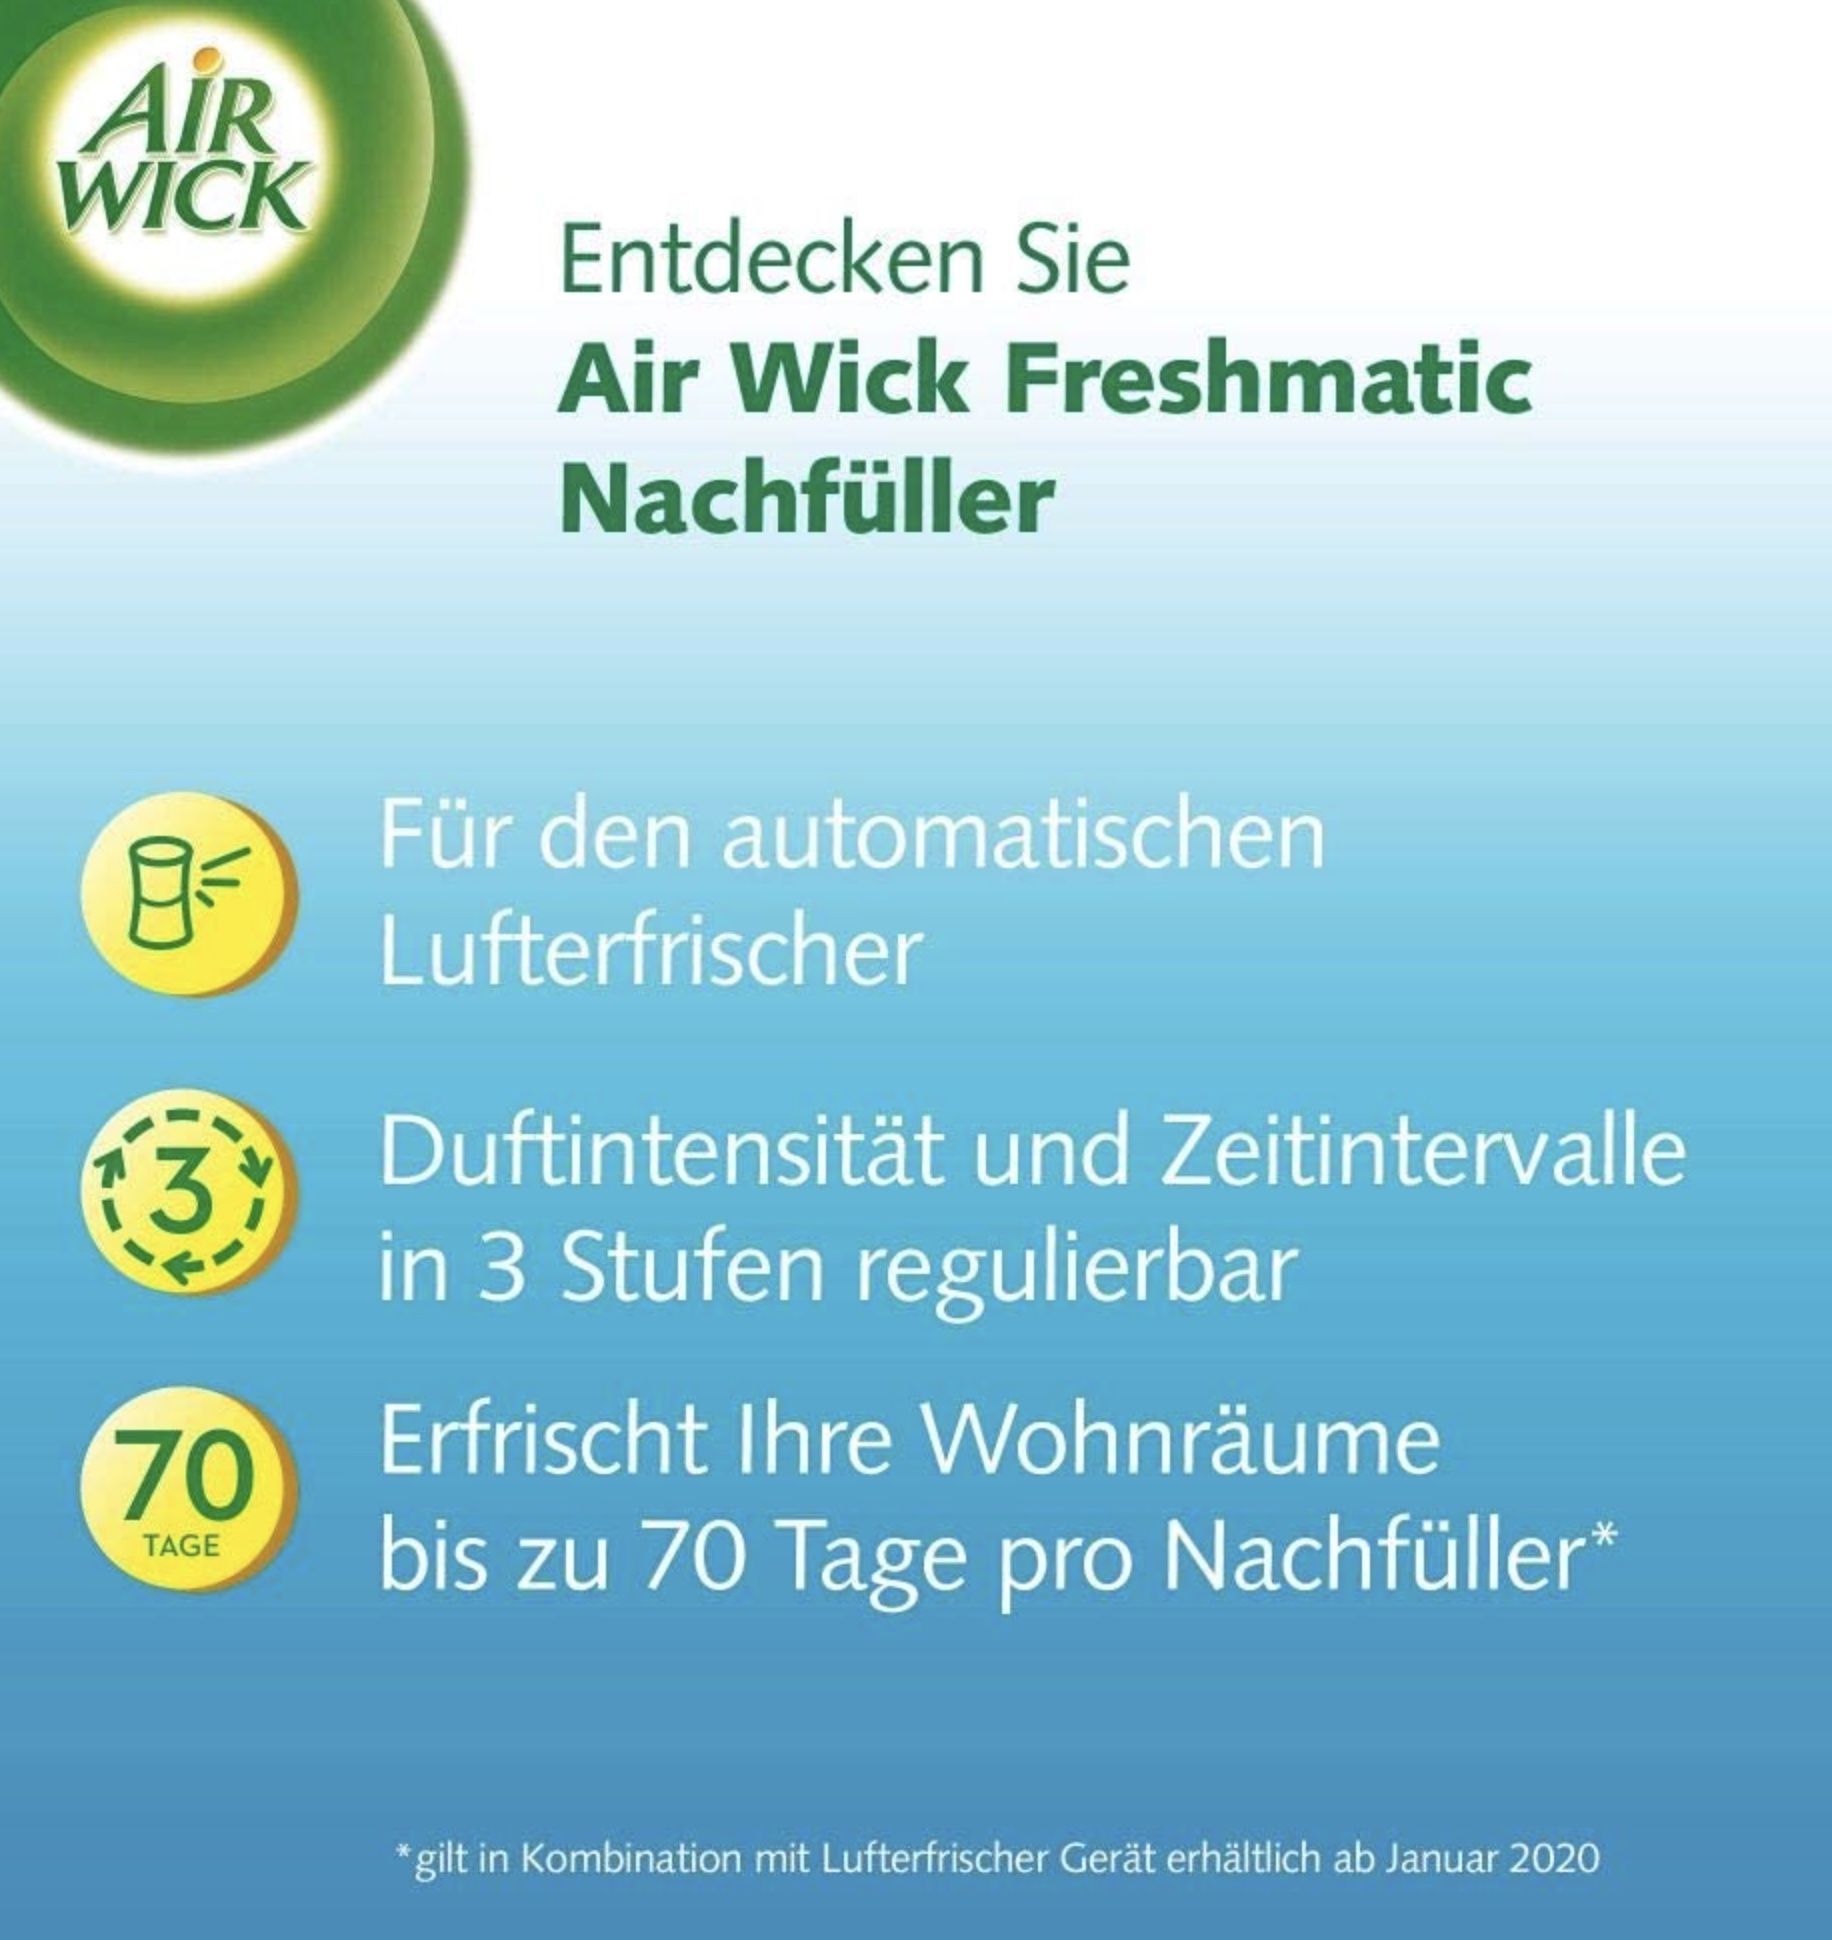 6x Air Wick Freshmatic Max Raumspray weißer Flieder Nachfüller für 12,96€ (statt 21€)   Prime Sparabo